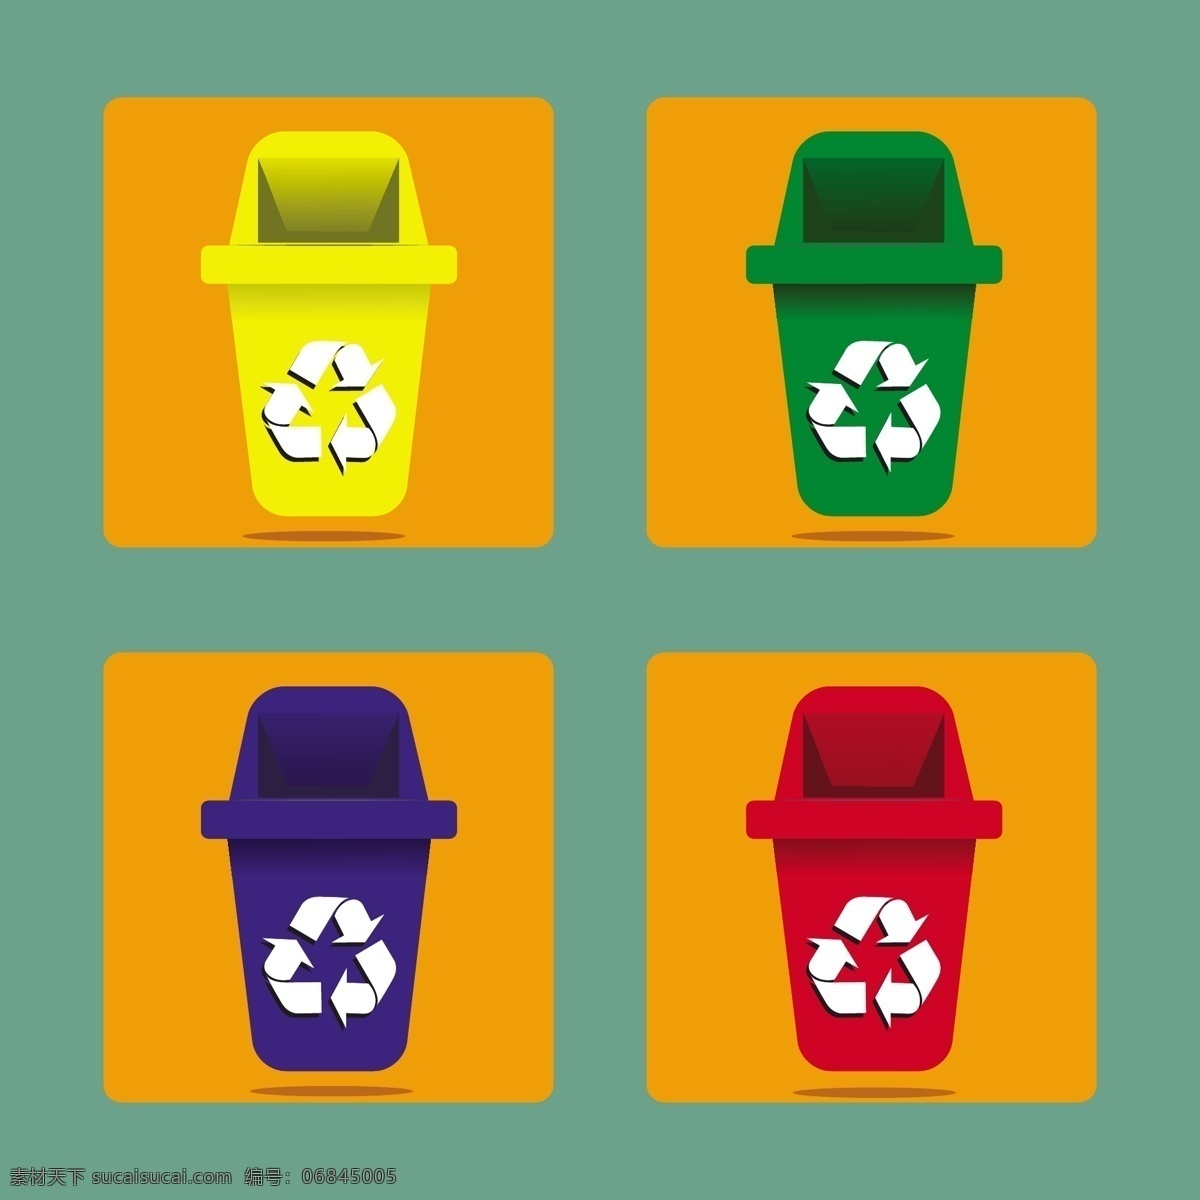 各种 颜色 垃圾桶 可回收标志 彩色垃圾桶 垃圾桶图标 卡通垃圾桶 矢量垃圾桶 生活百科 矢量素材 橙色